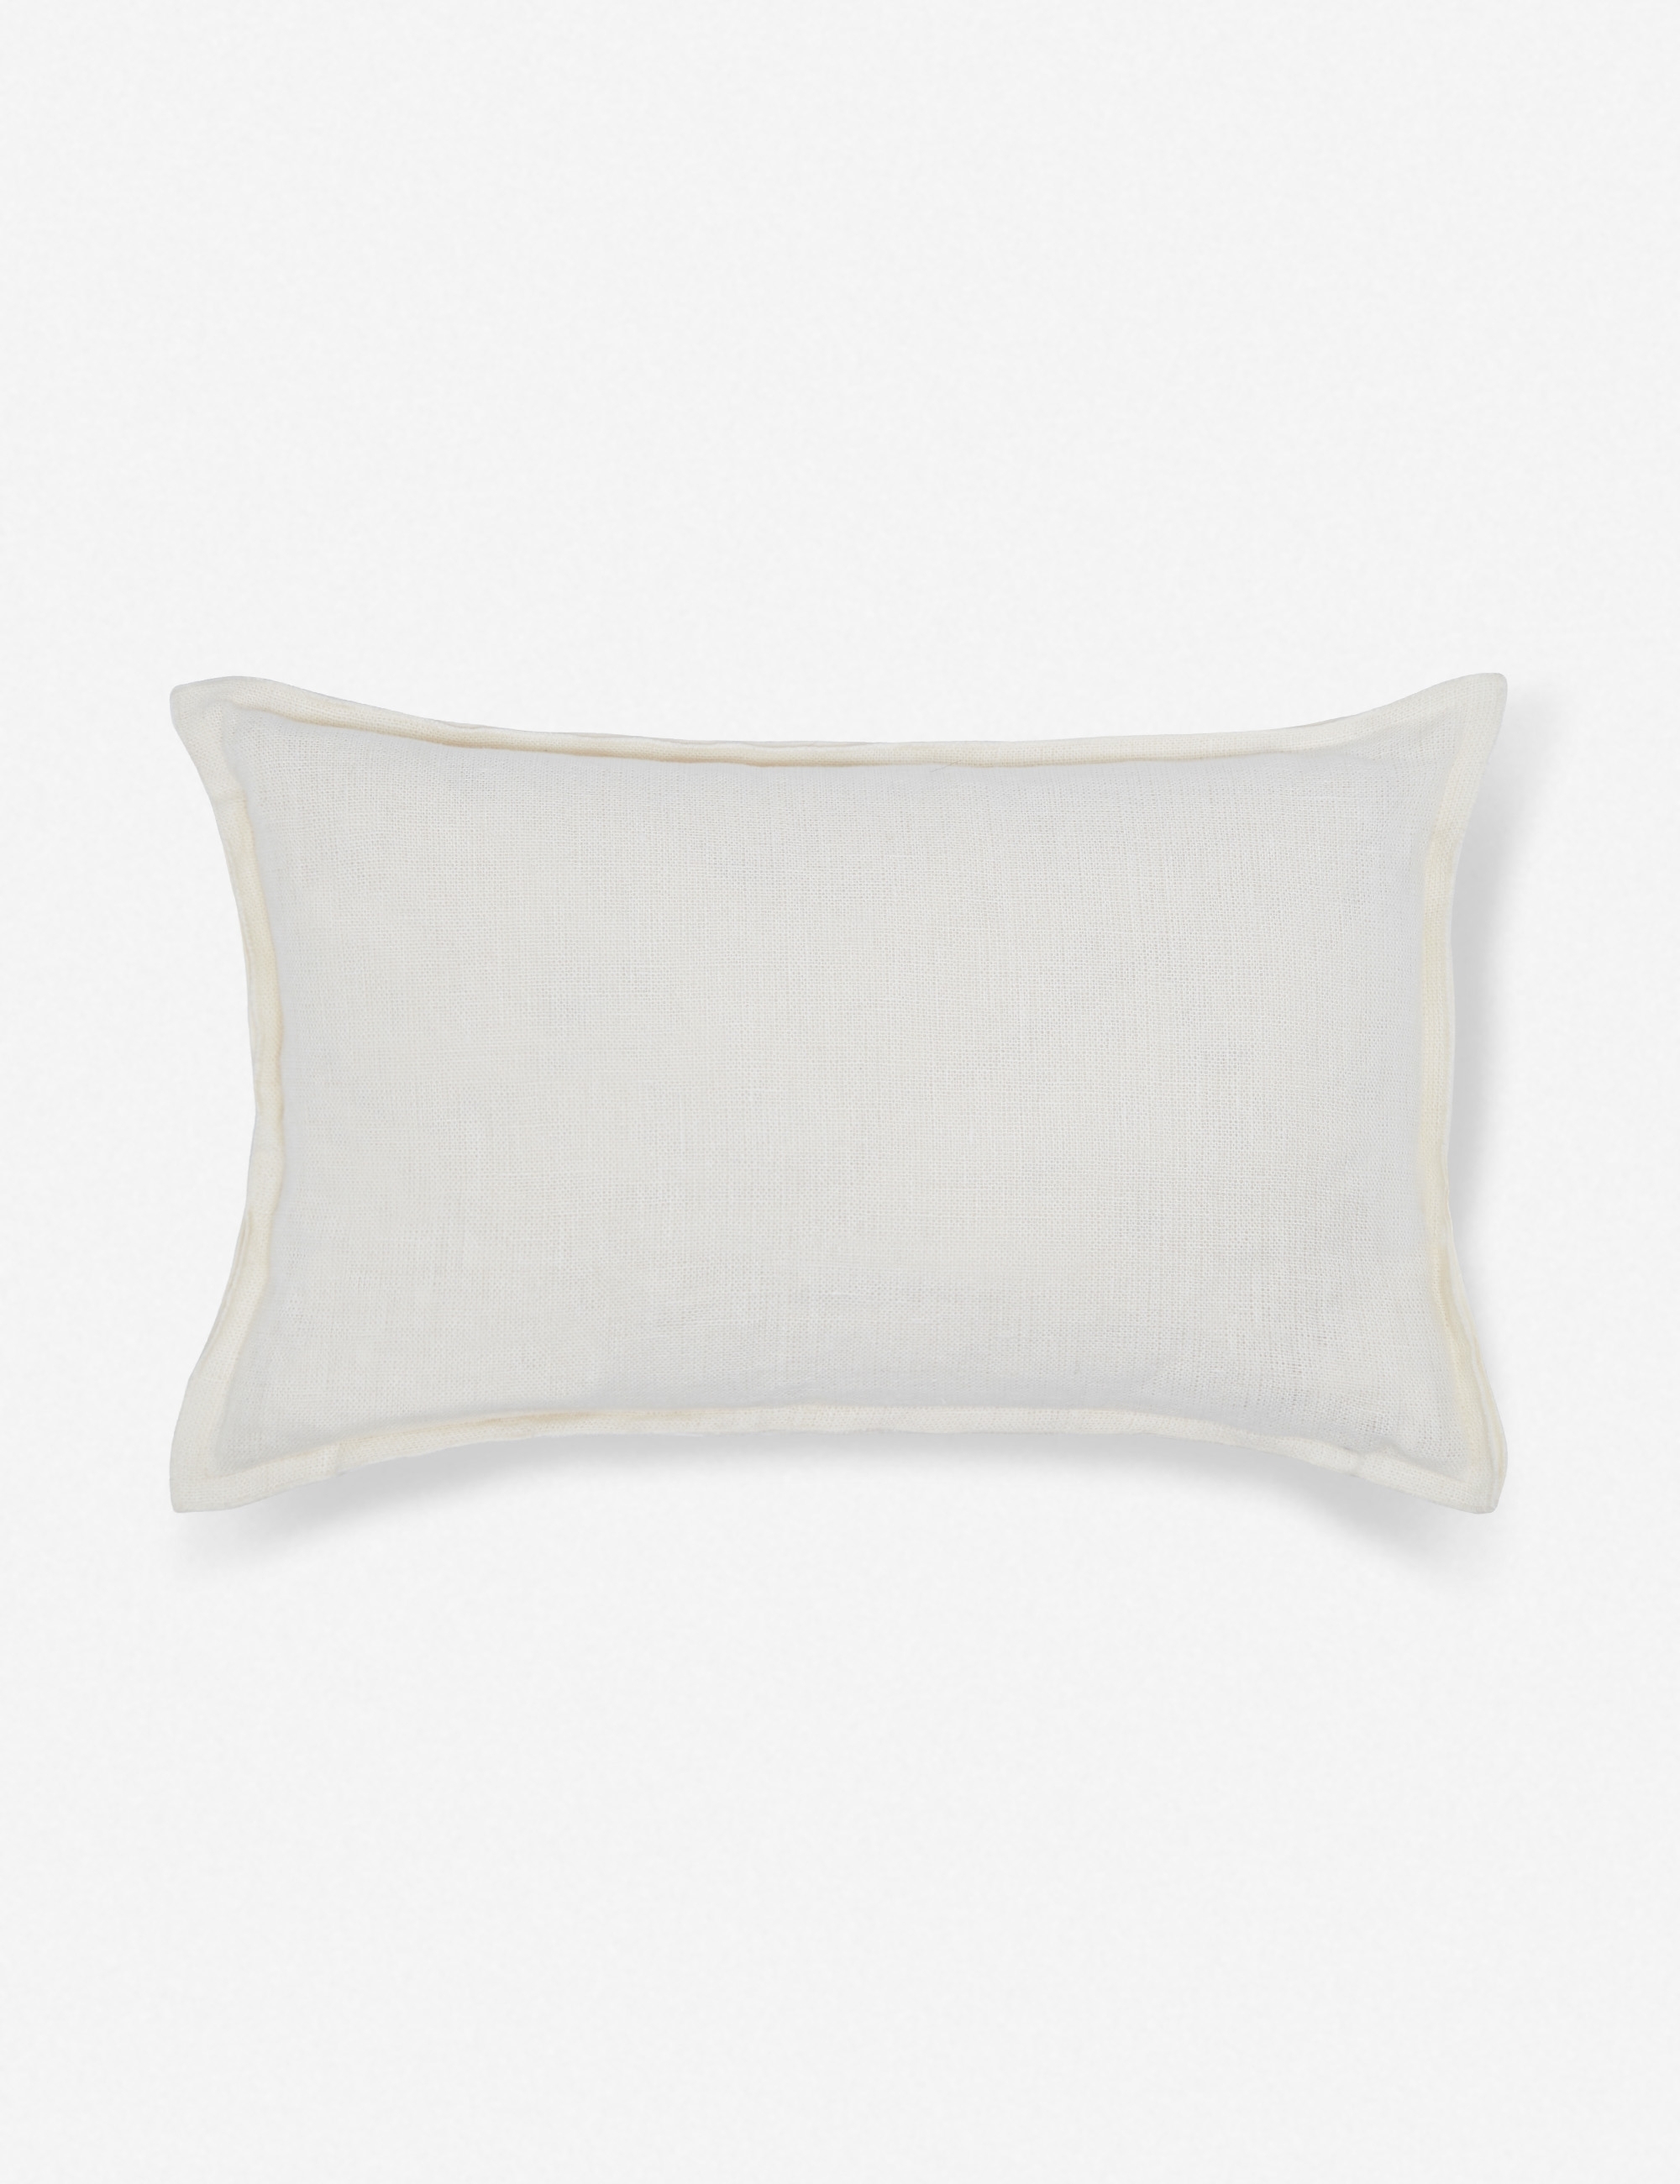 Arlo Linen Lumbar Pillow, Ivory - Image 0